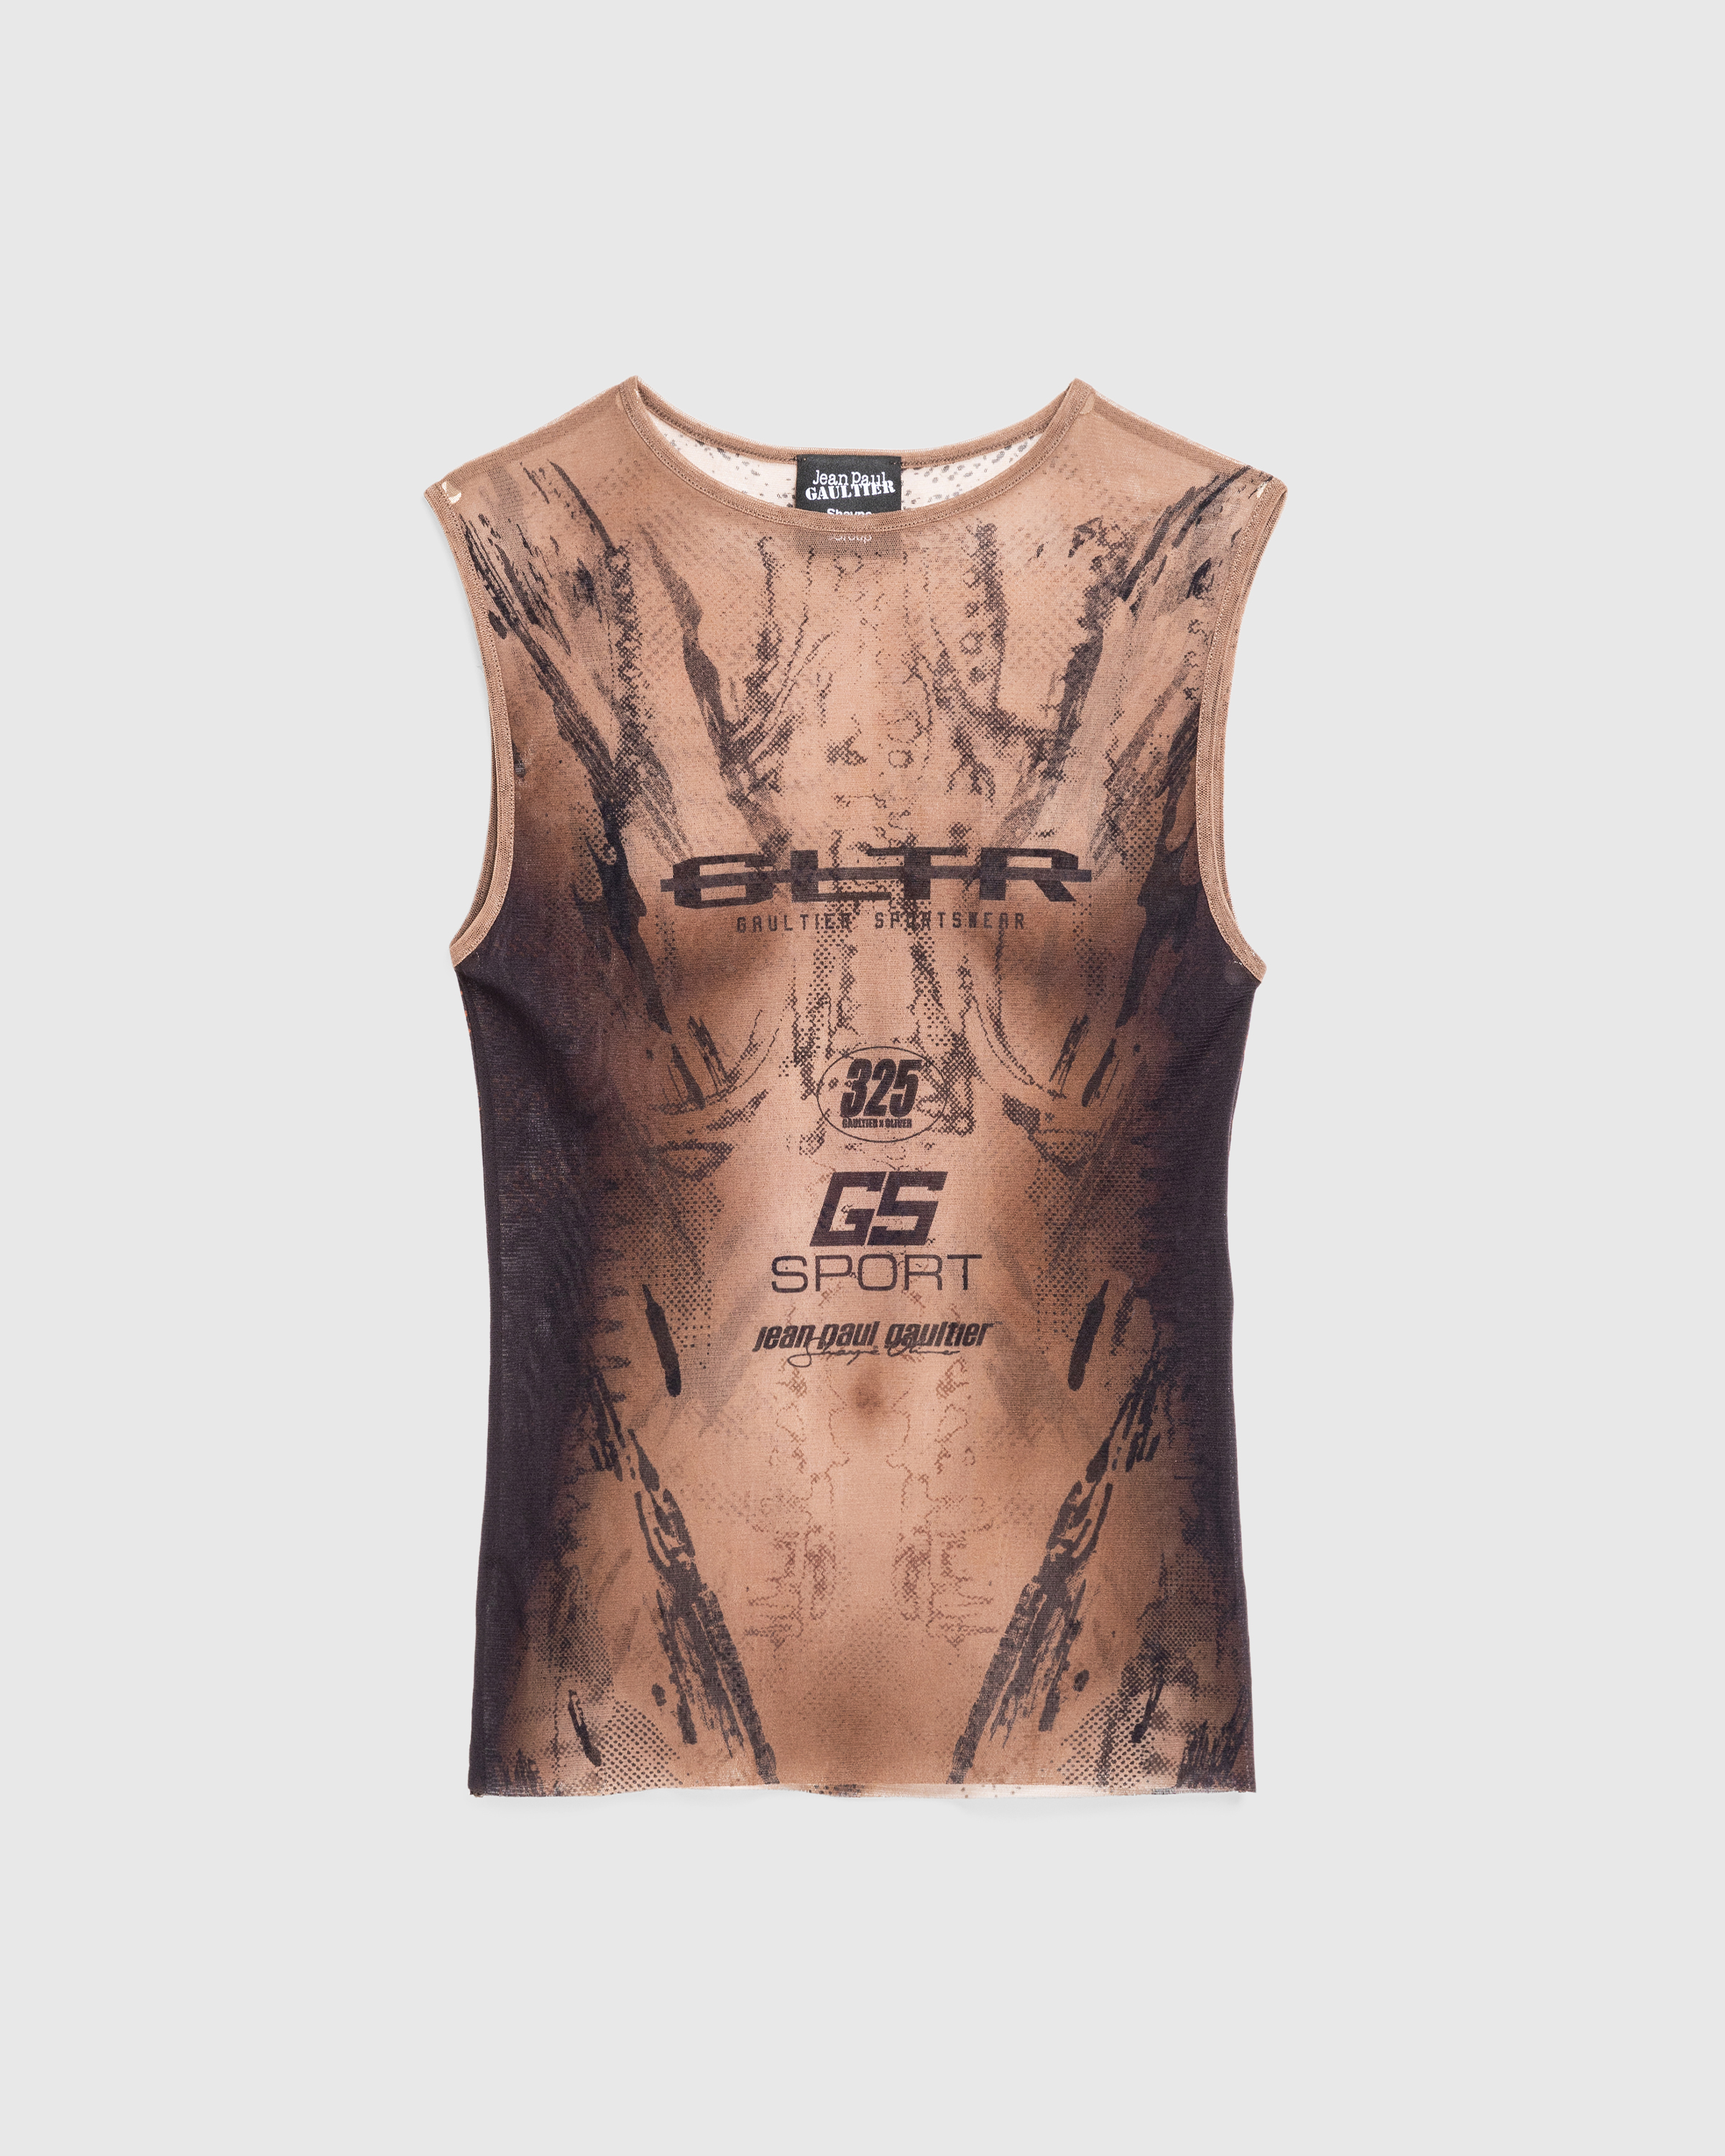 Jean Paul Gaultier x Shayne Oliver – Mesh Tank Top Printed "Body" Dark Nude/Black - Tank Tops - Beige - Image 1